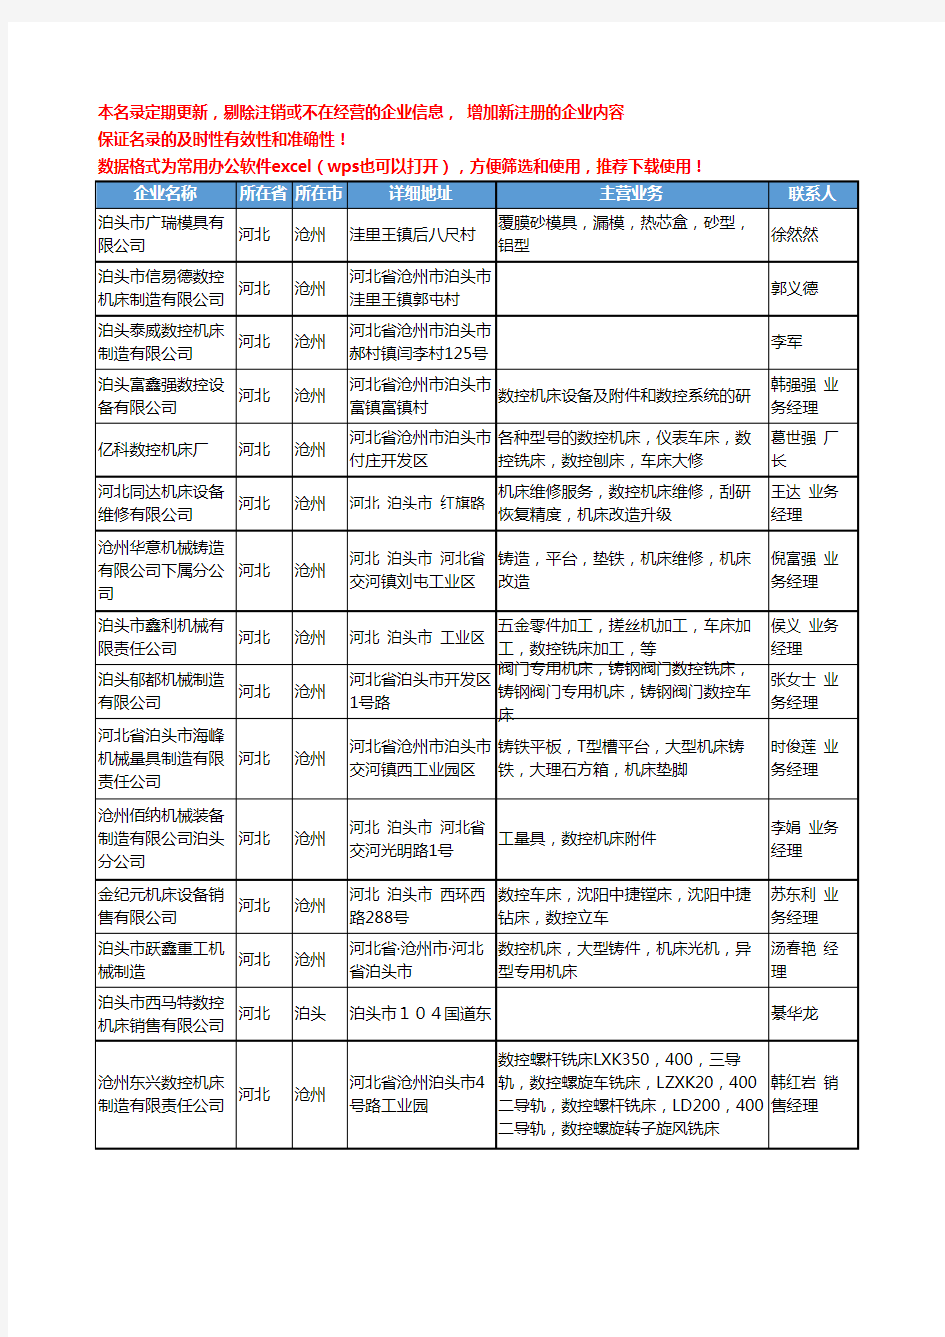 2020新版河北省数控机床工商企业公司名录名单黄页联系方式大全56家